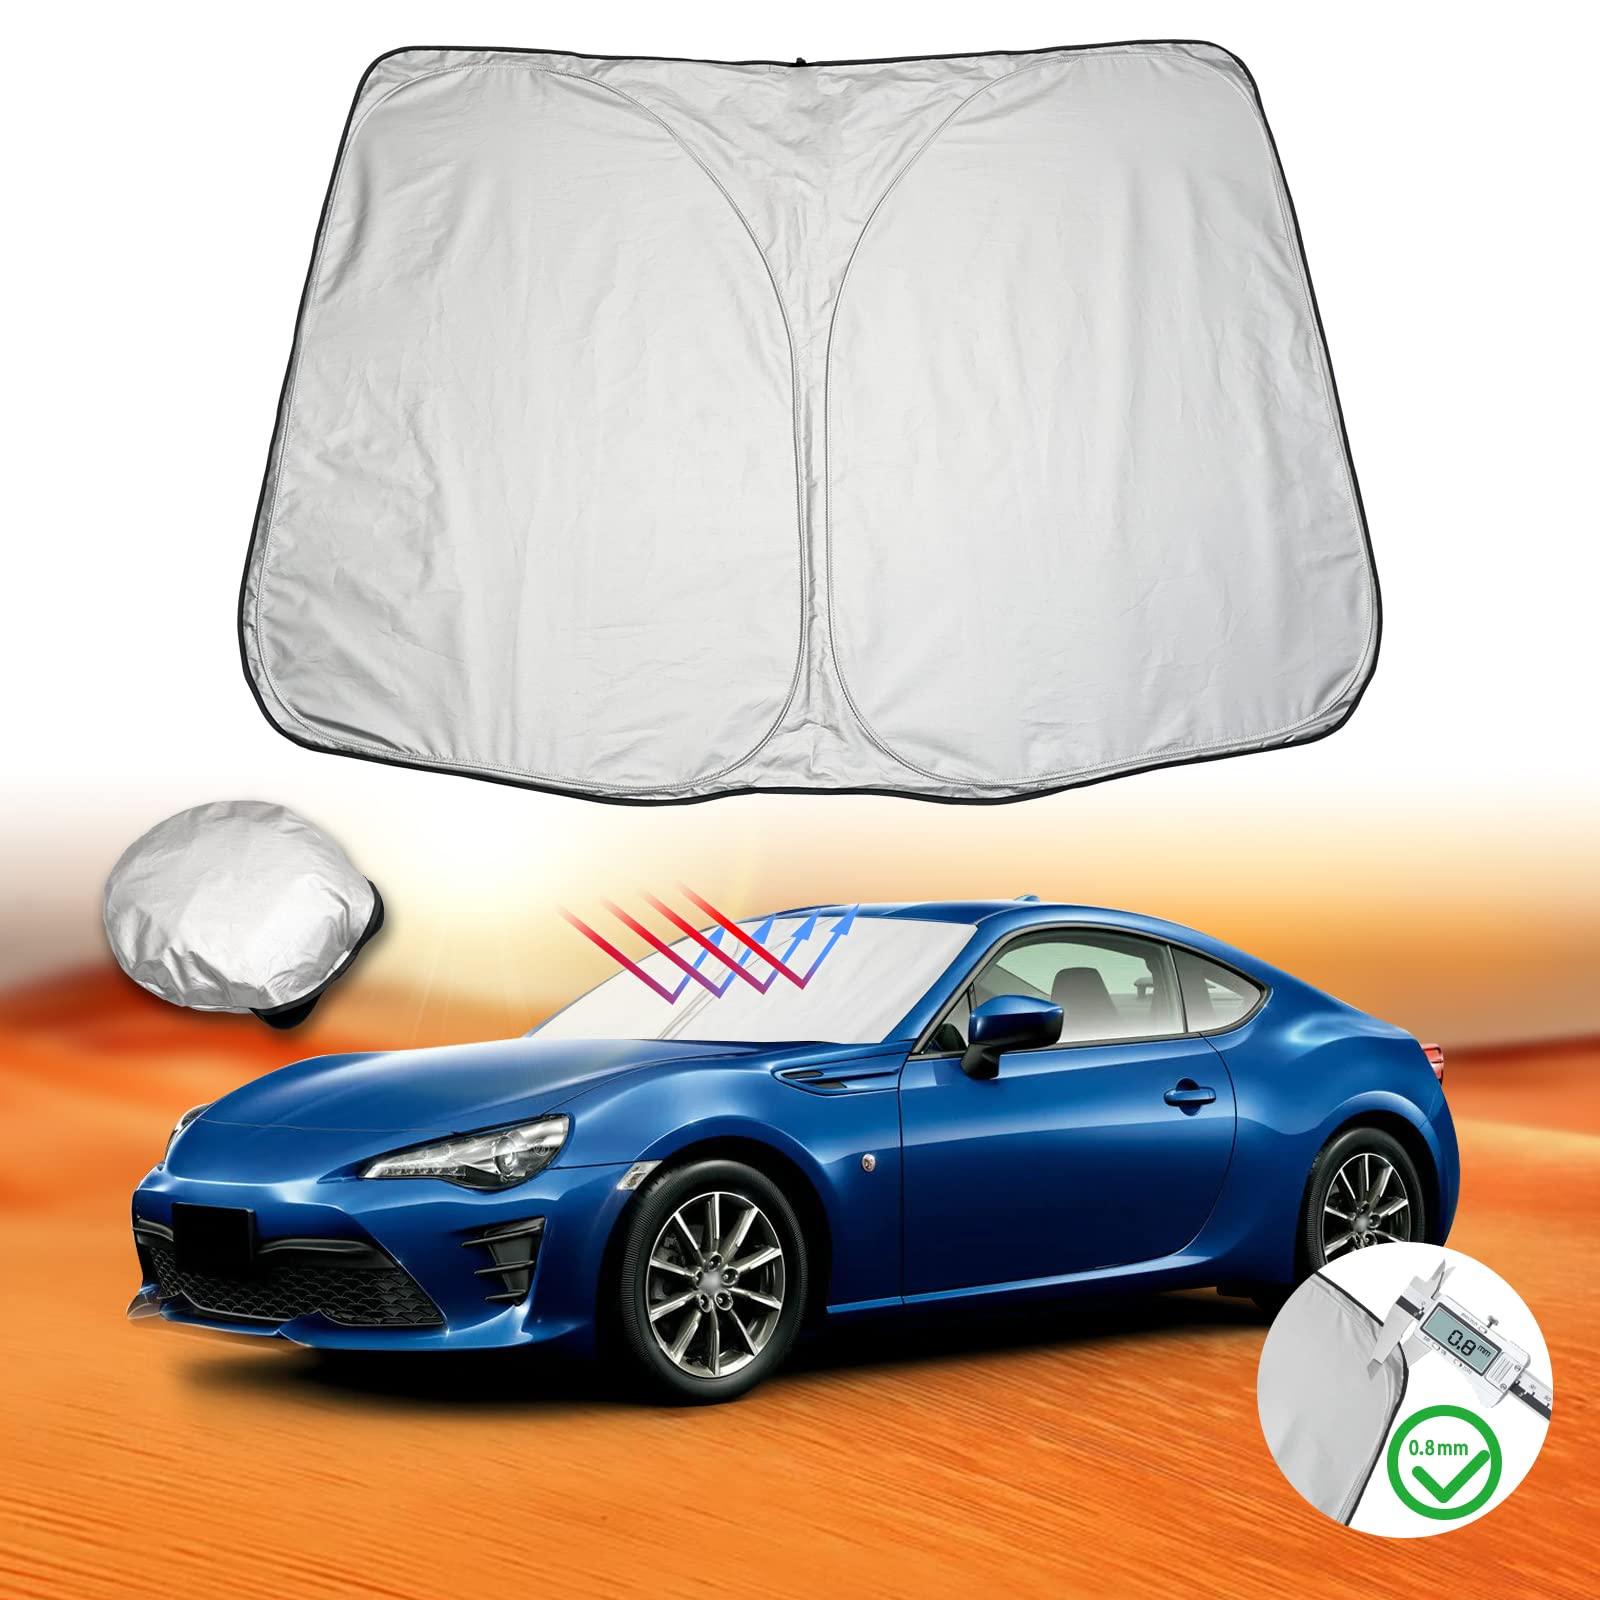 Sunshade - LFOTPP Car Accessories